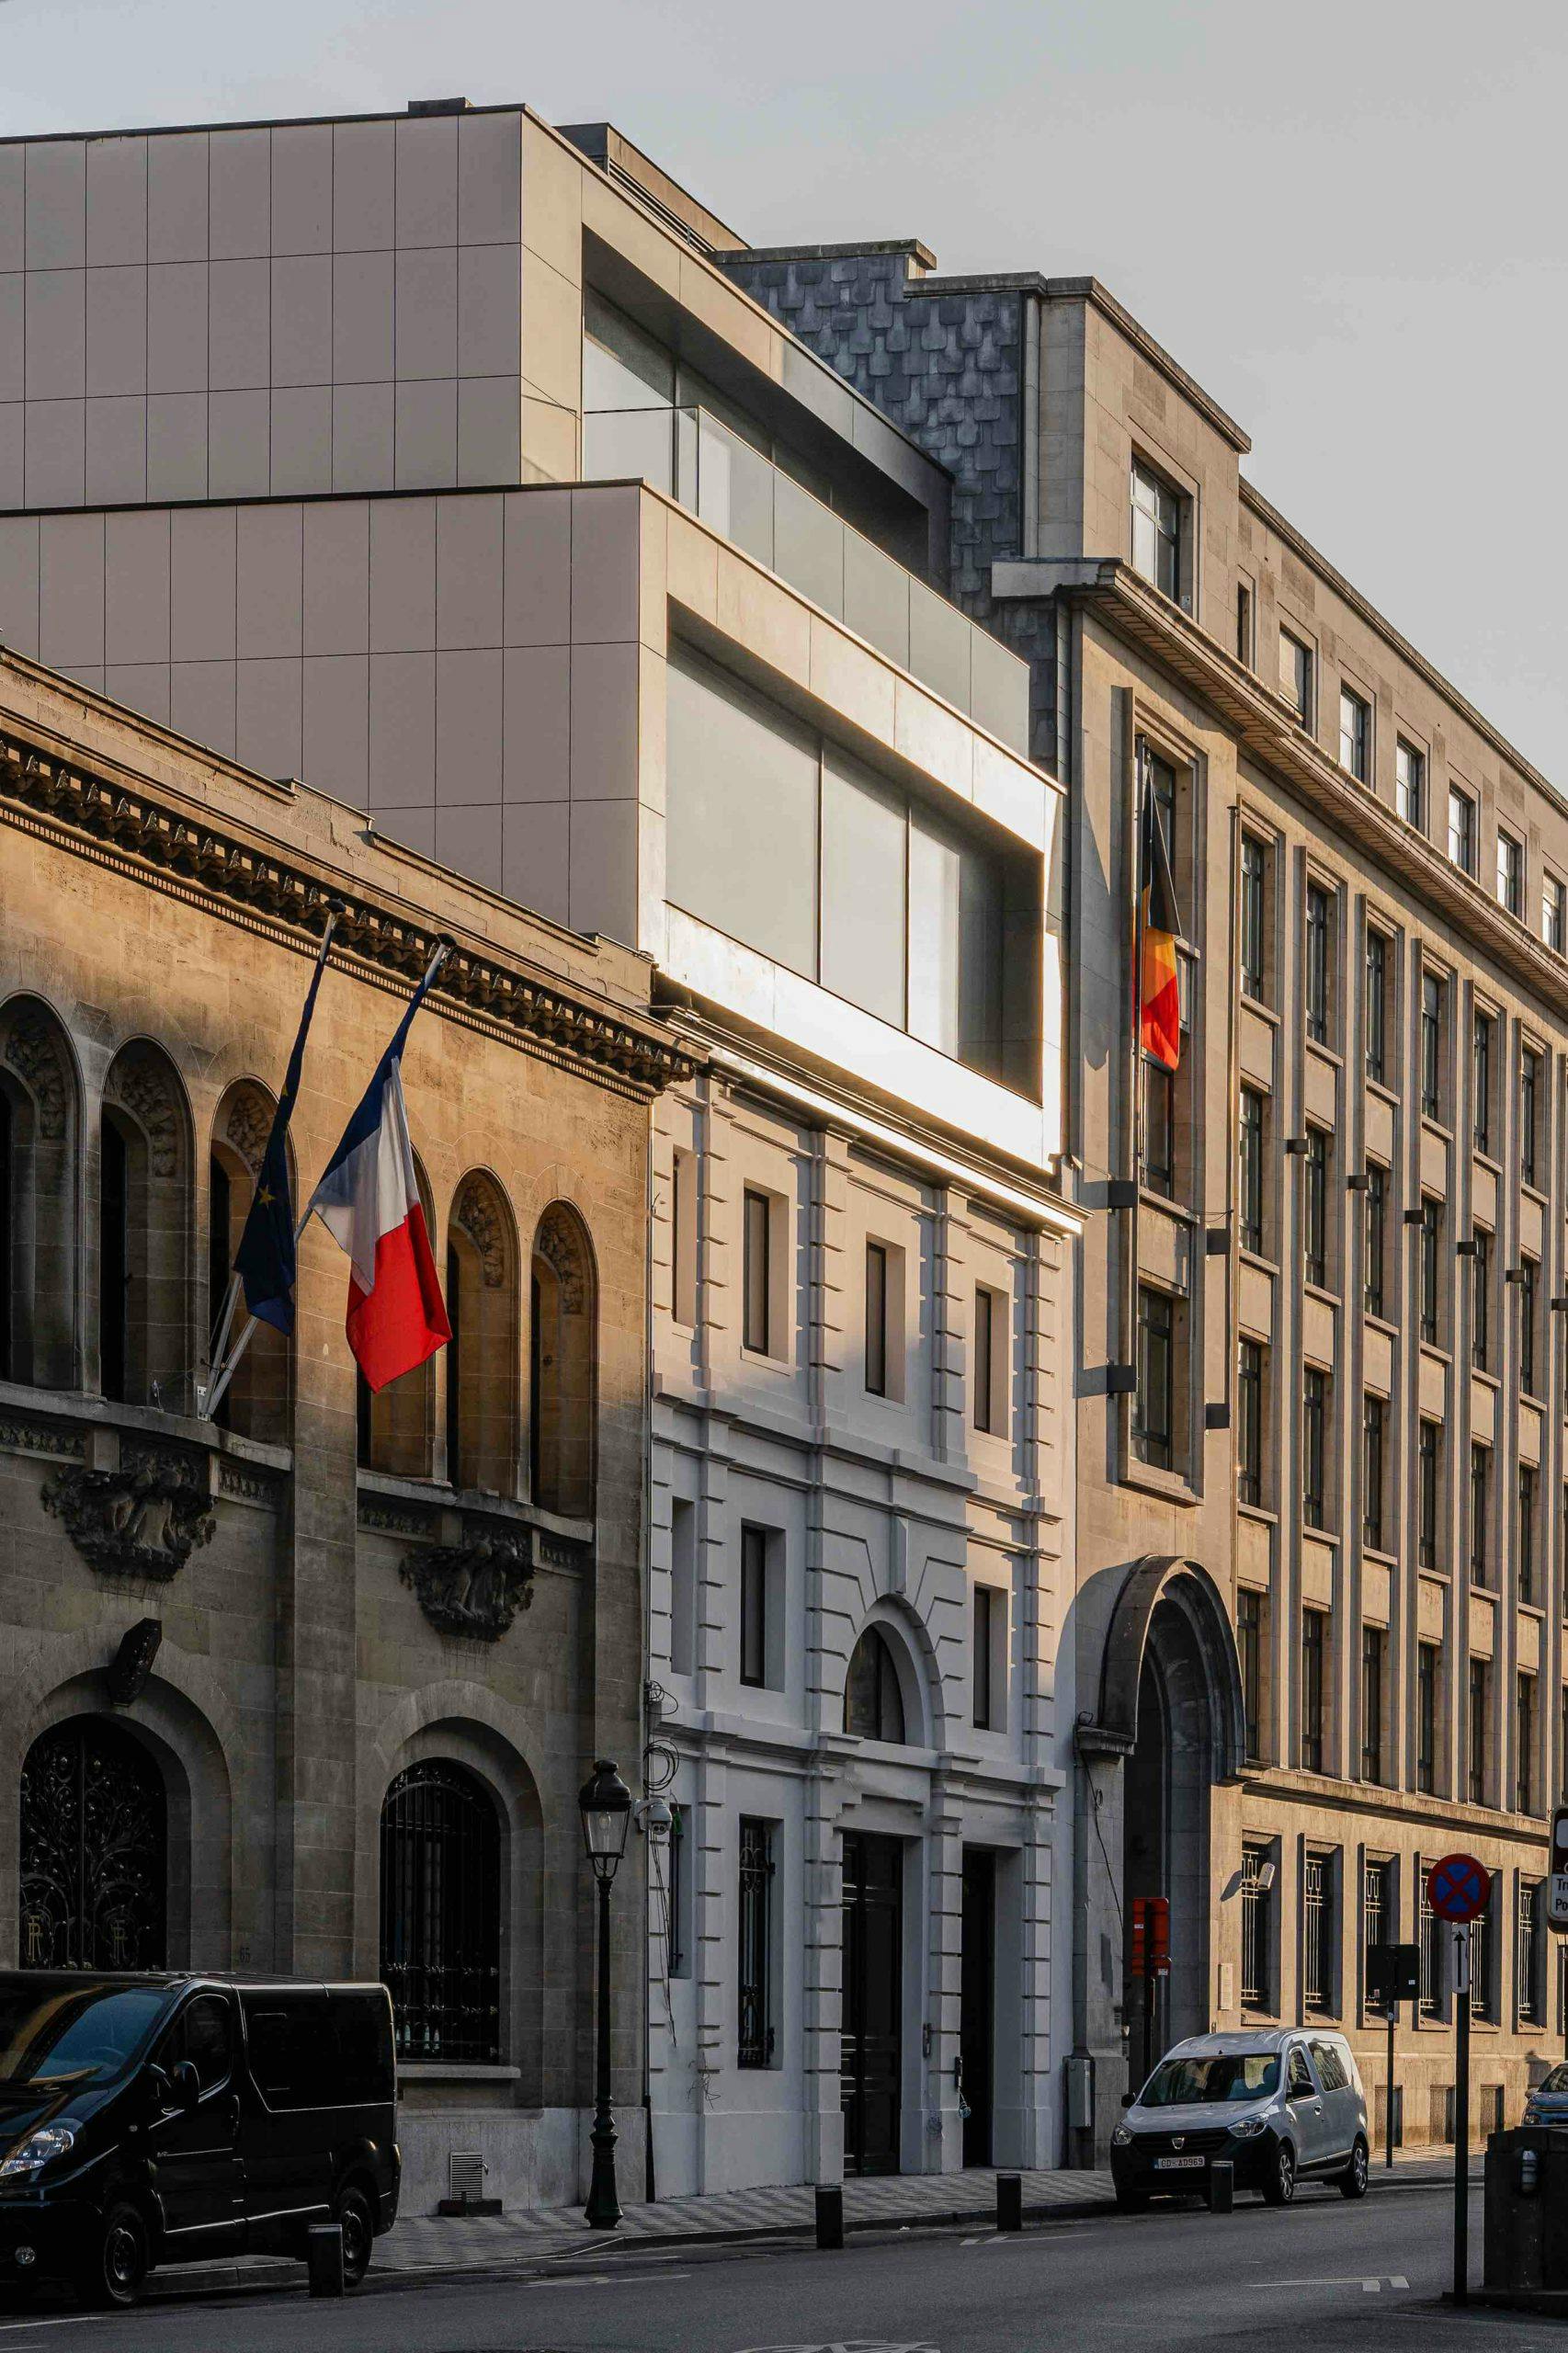 Numéro d'image 48 de la section actuelle de Réflexions en DKTN: la rénovation du bâtiment classique « The Duke » de Bruxelles de Cosentino France